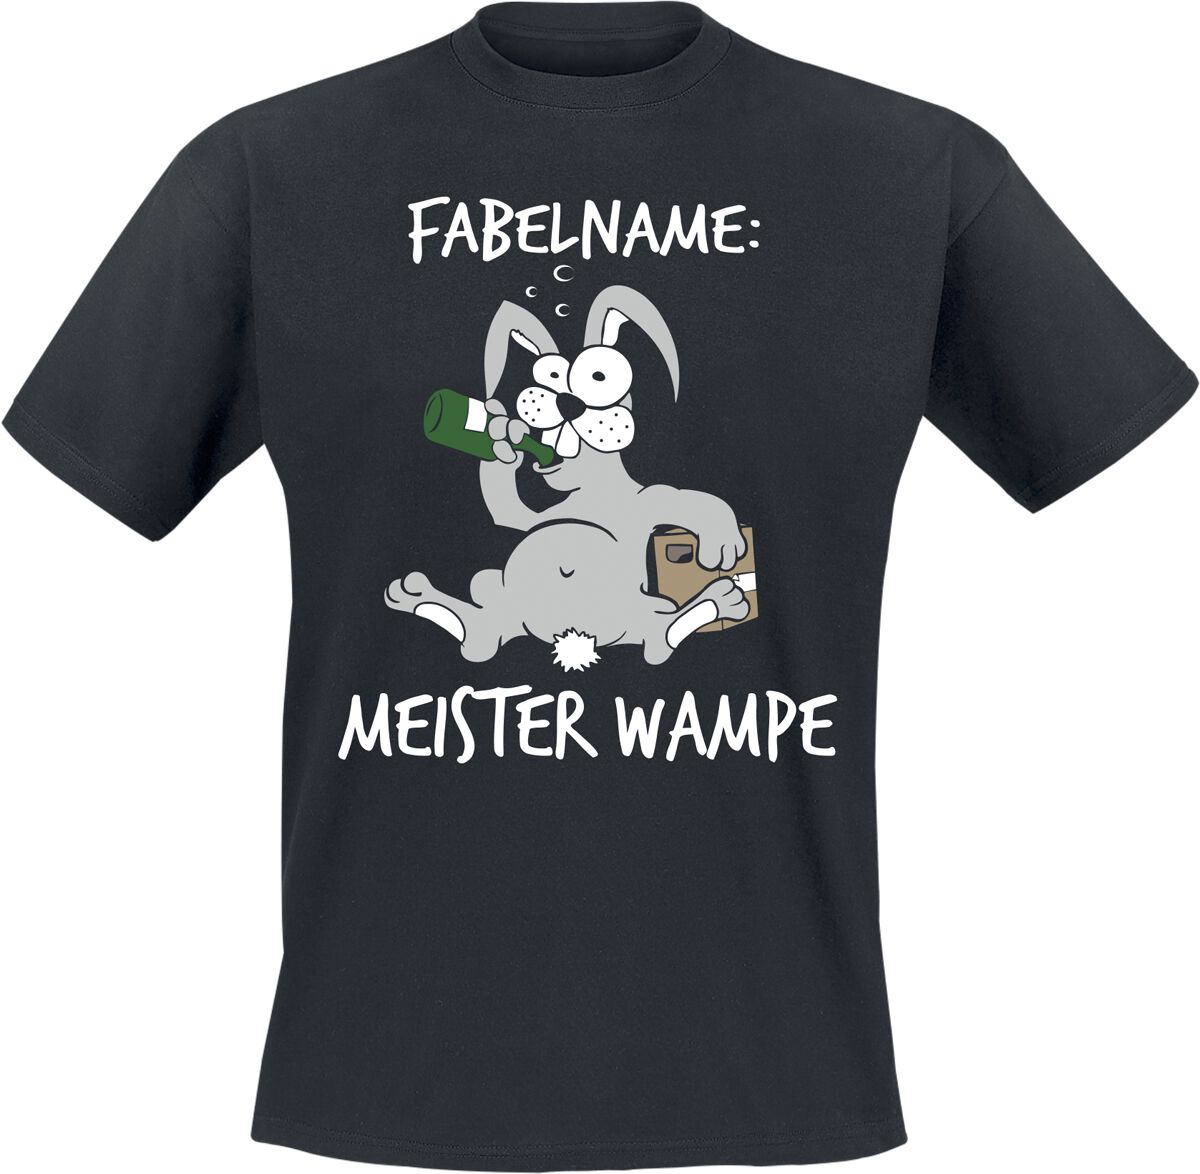 Tierisch T-Shirt - Fabelname: Meister Wampe - M bis XL - für Männer - Größe M - schwarz